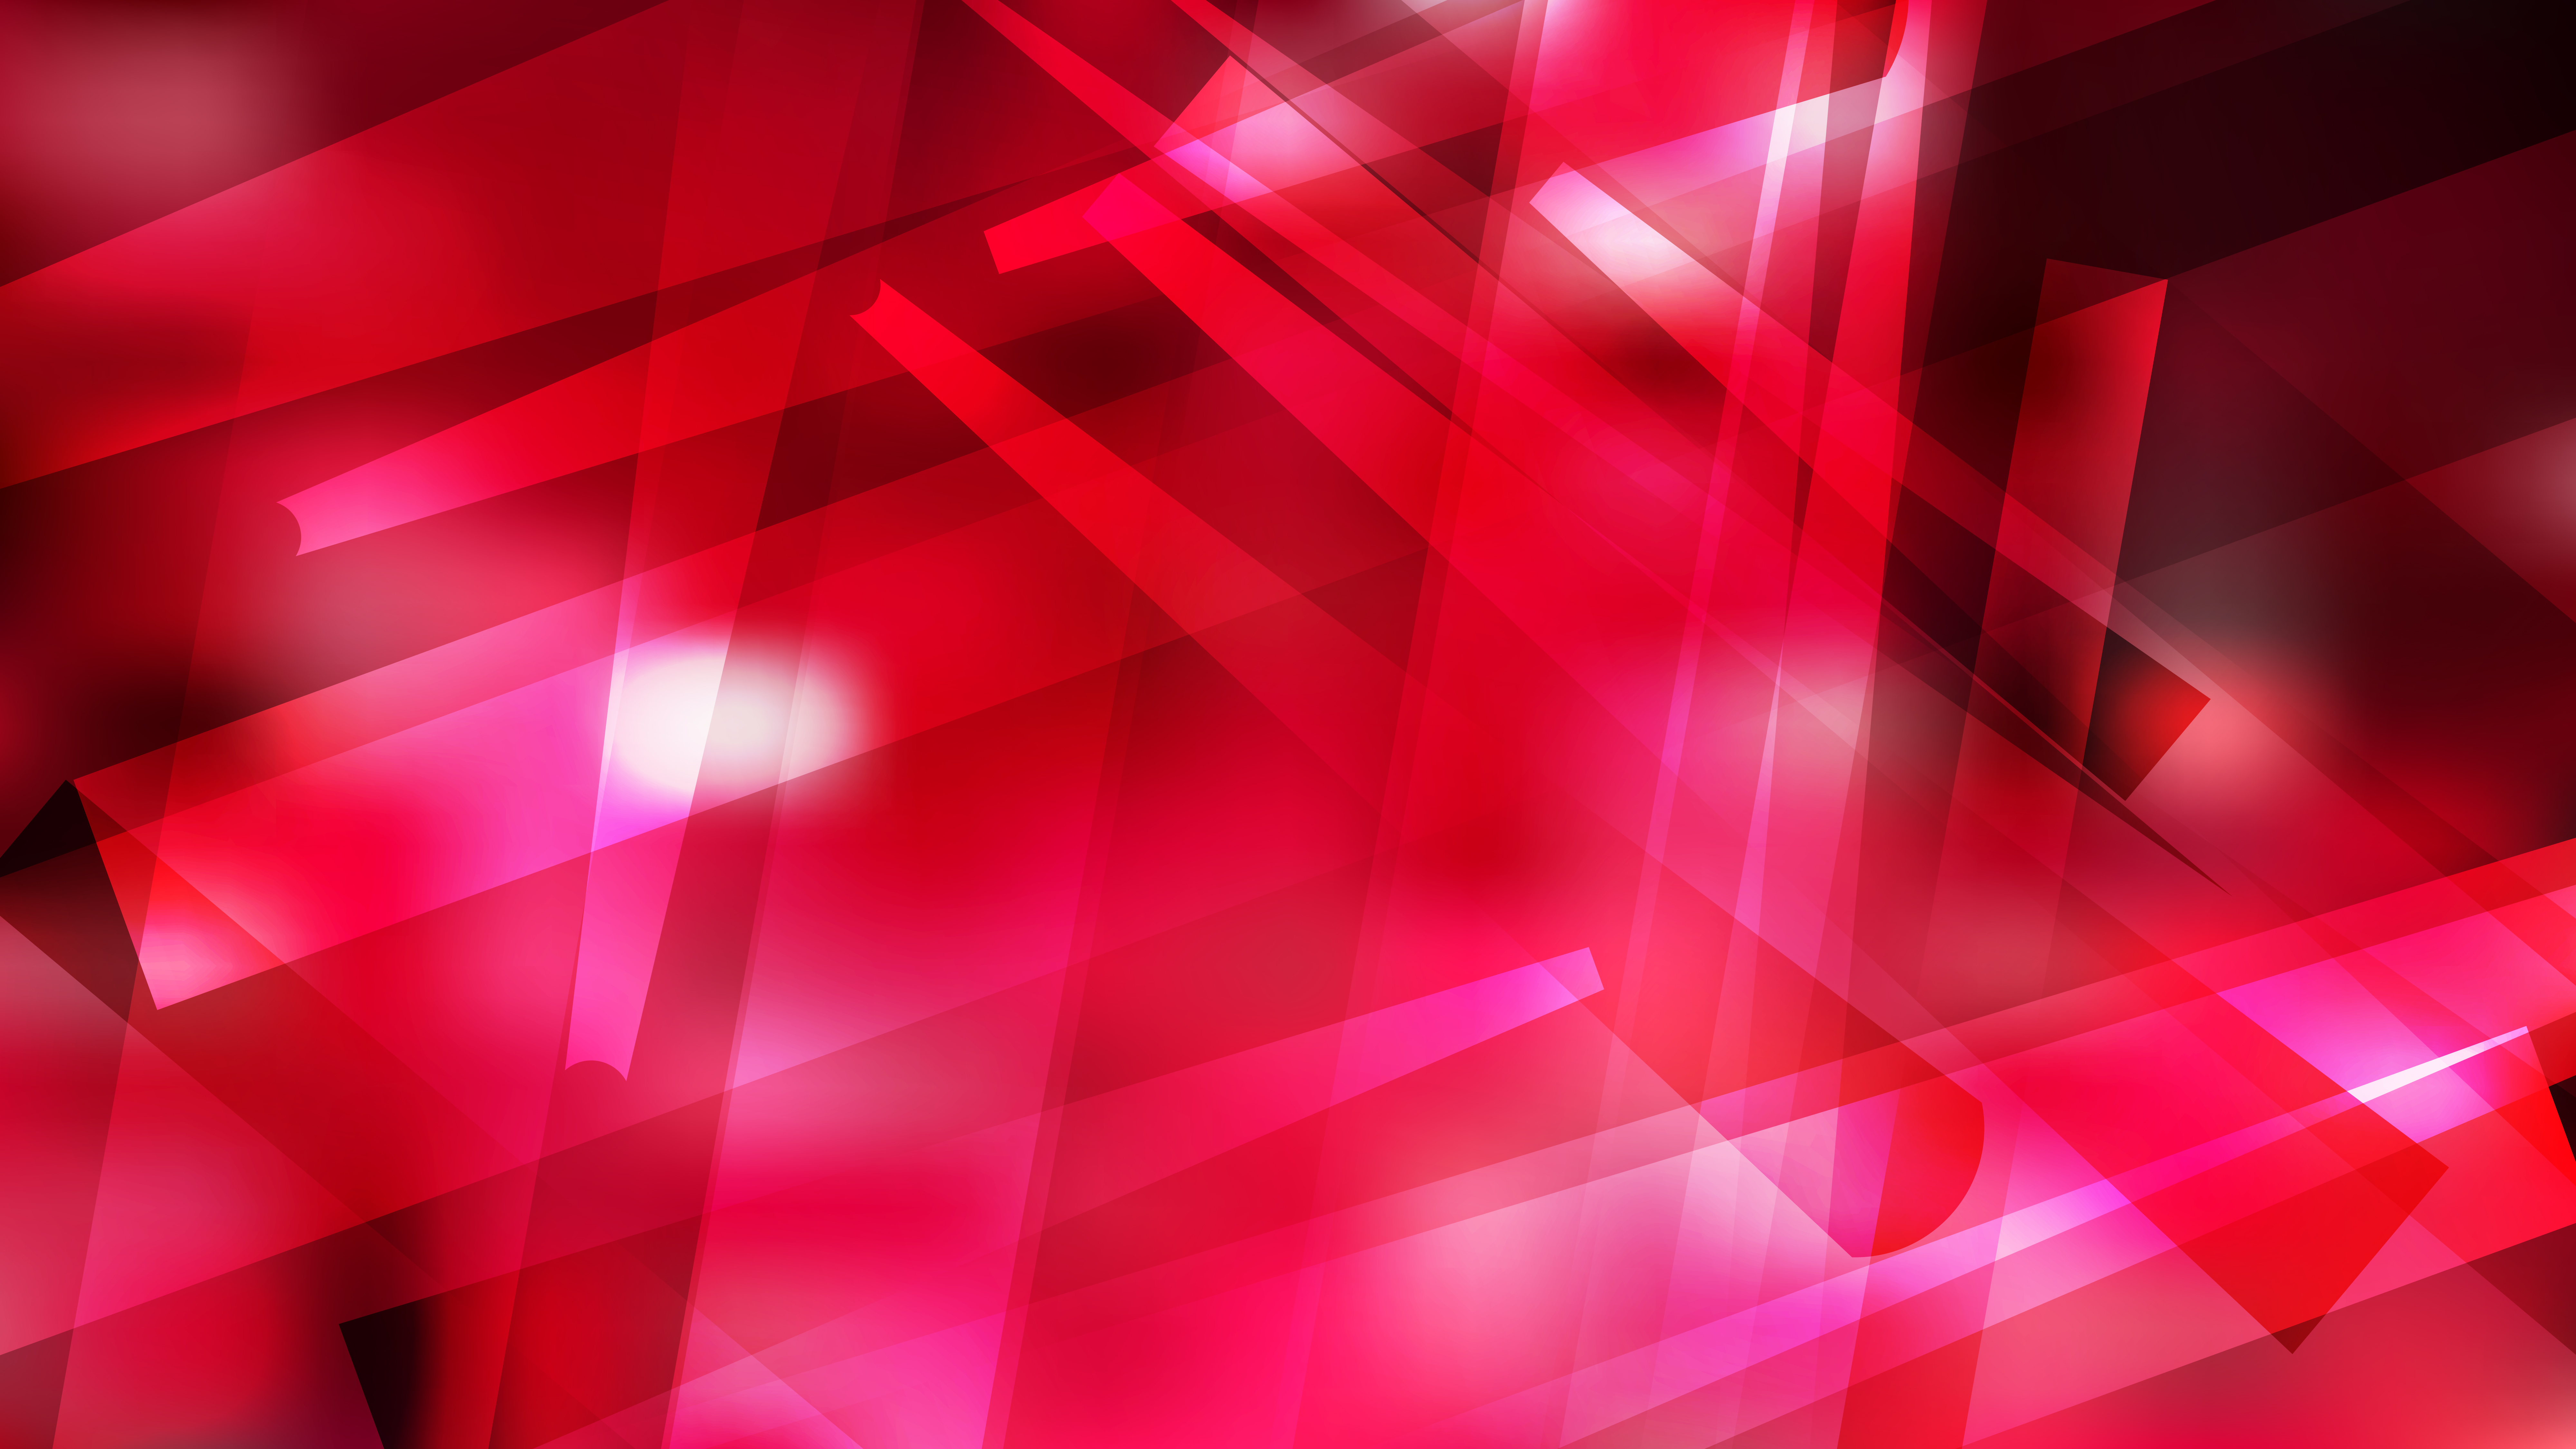 Miễn phí và tinh tế, hình ảnh Free Pink Red and Black Geometric Background mang lại sự trang trọng và hiện đại cho tất cả các thiết bị của bạn.